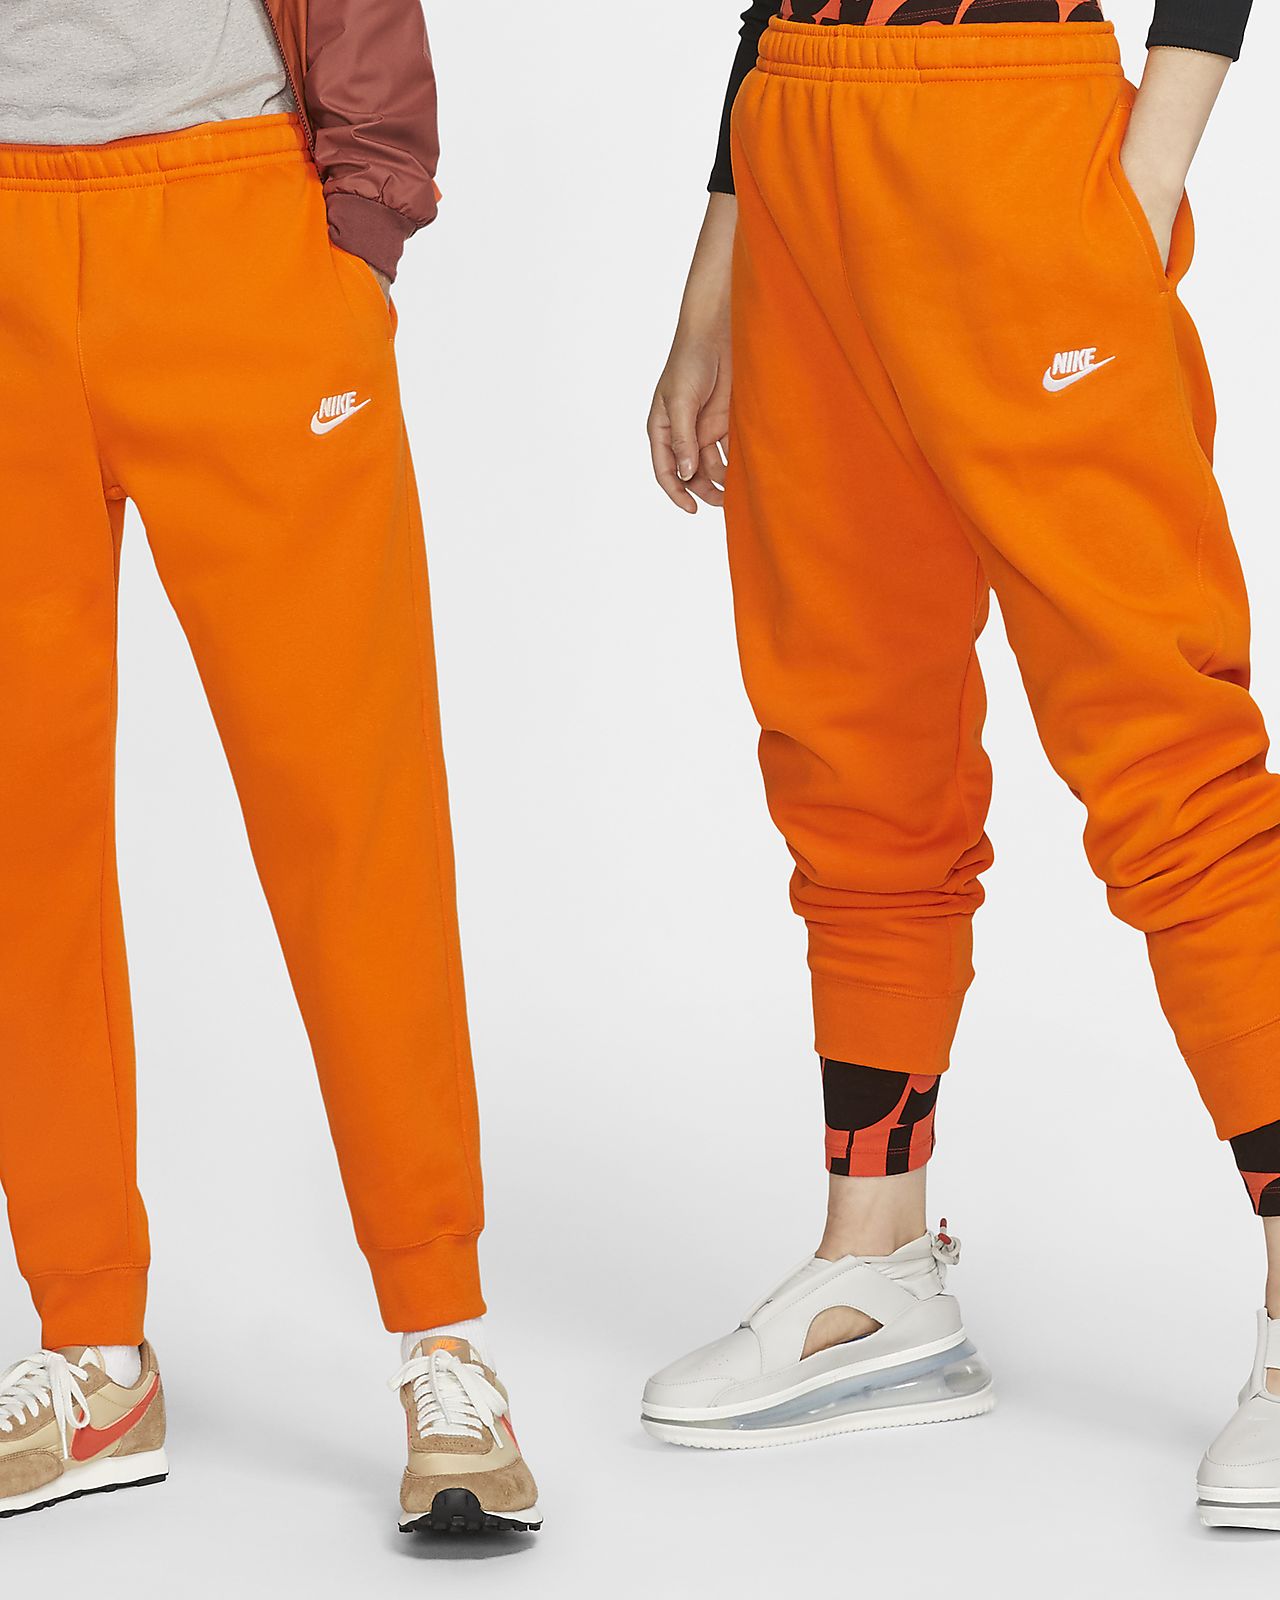 nike pants orange